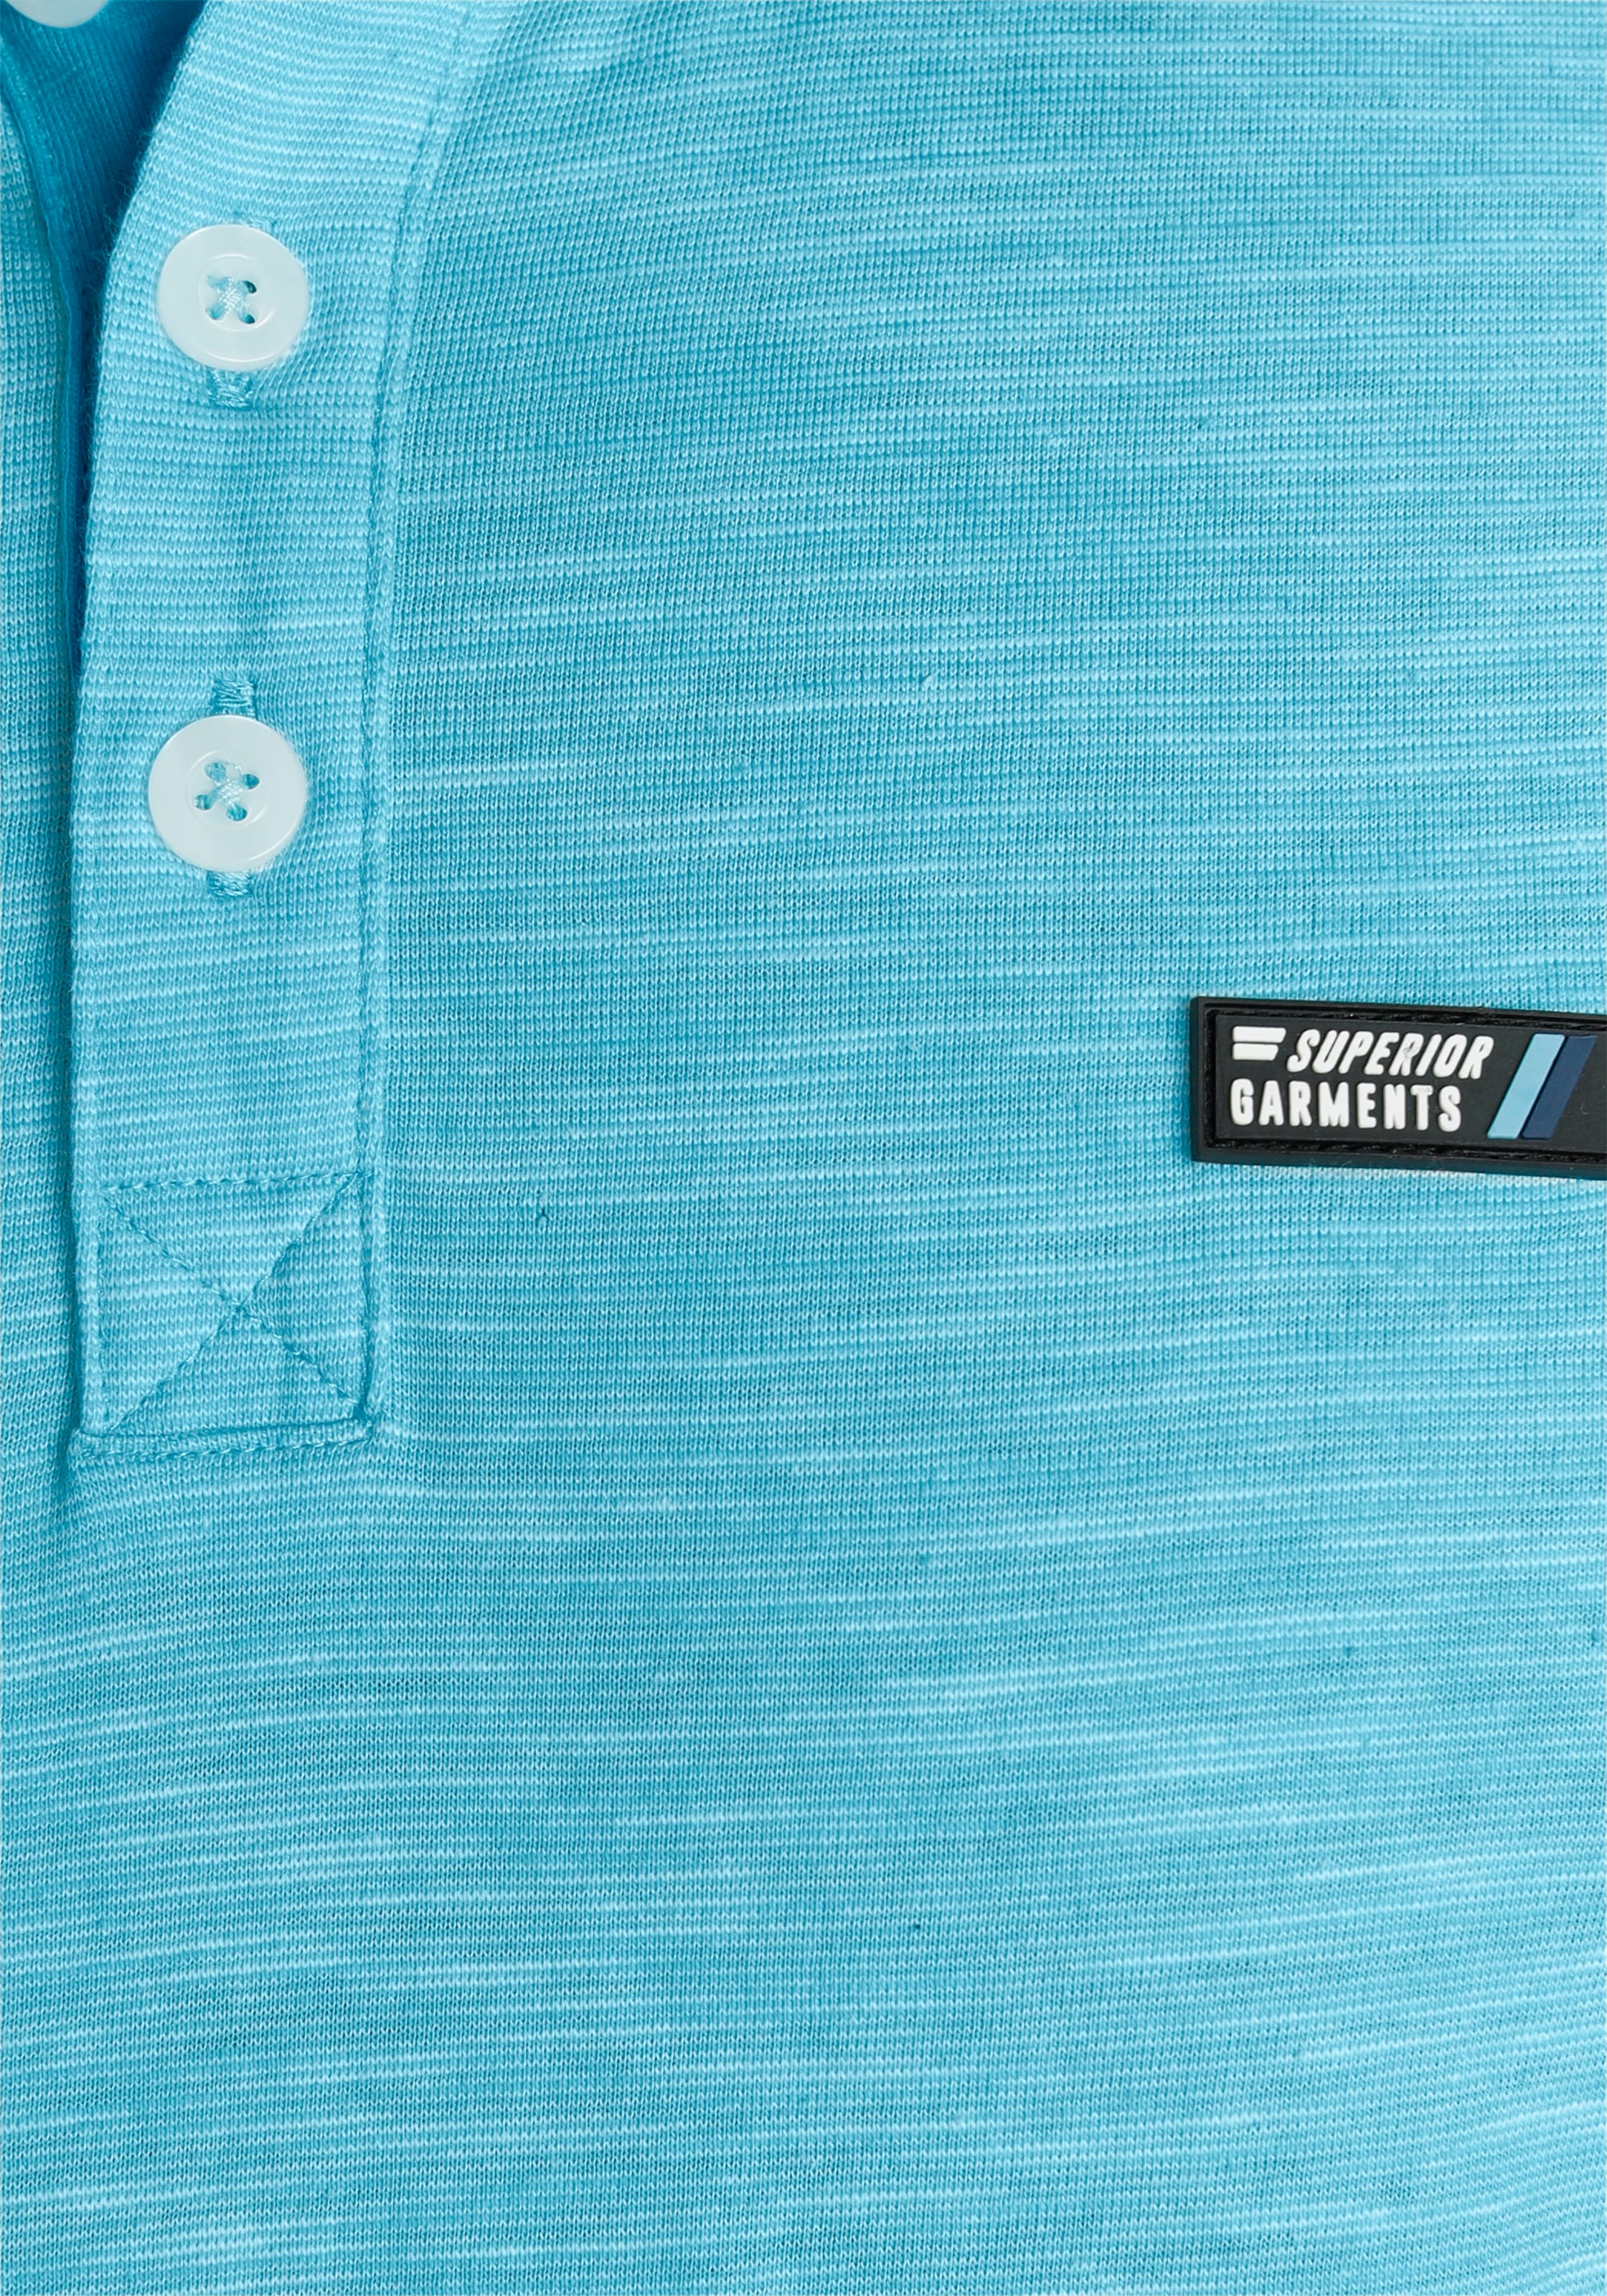 AJC Poloshirt, mit kontrastfarbenen Details an Kragen und Ärmeln